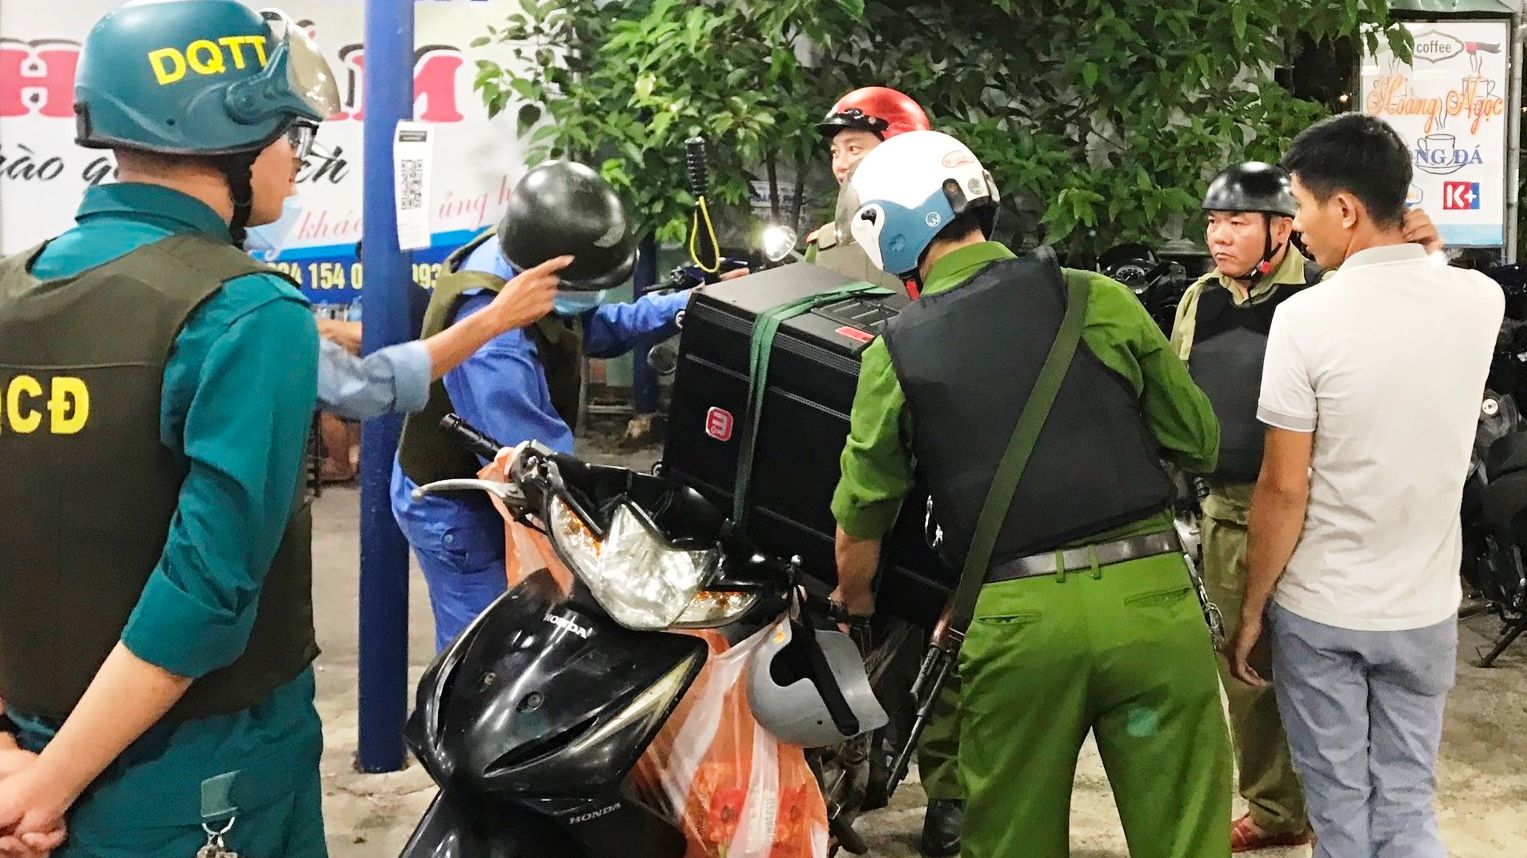 Đà Nẵng: Nhiều địa phương ra quân quyết trị ô nhiễm tiếng ồn